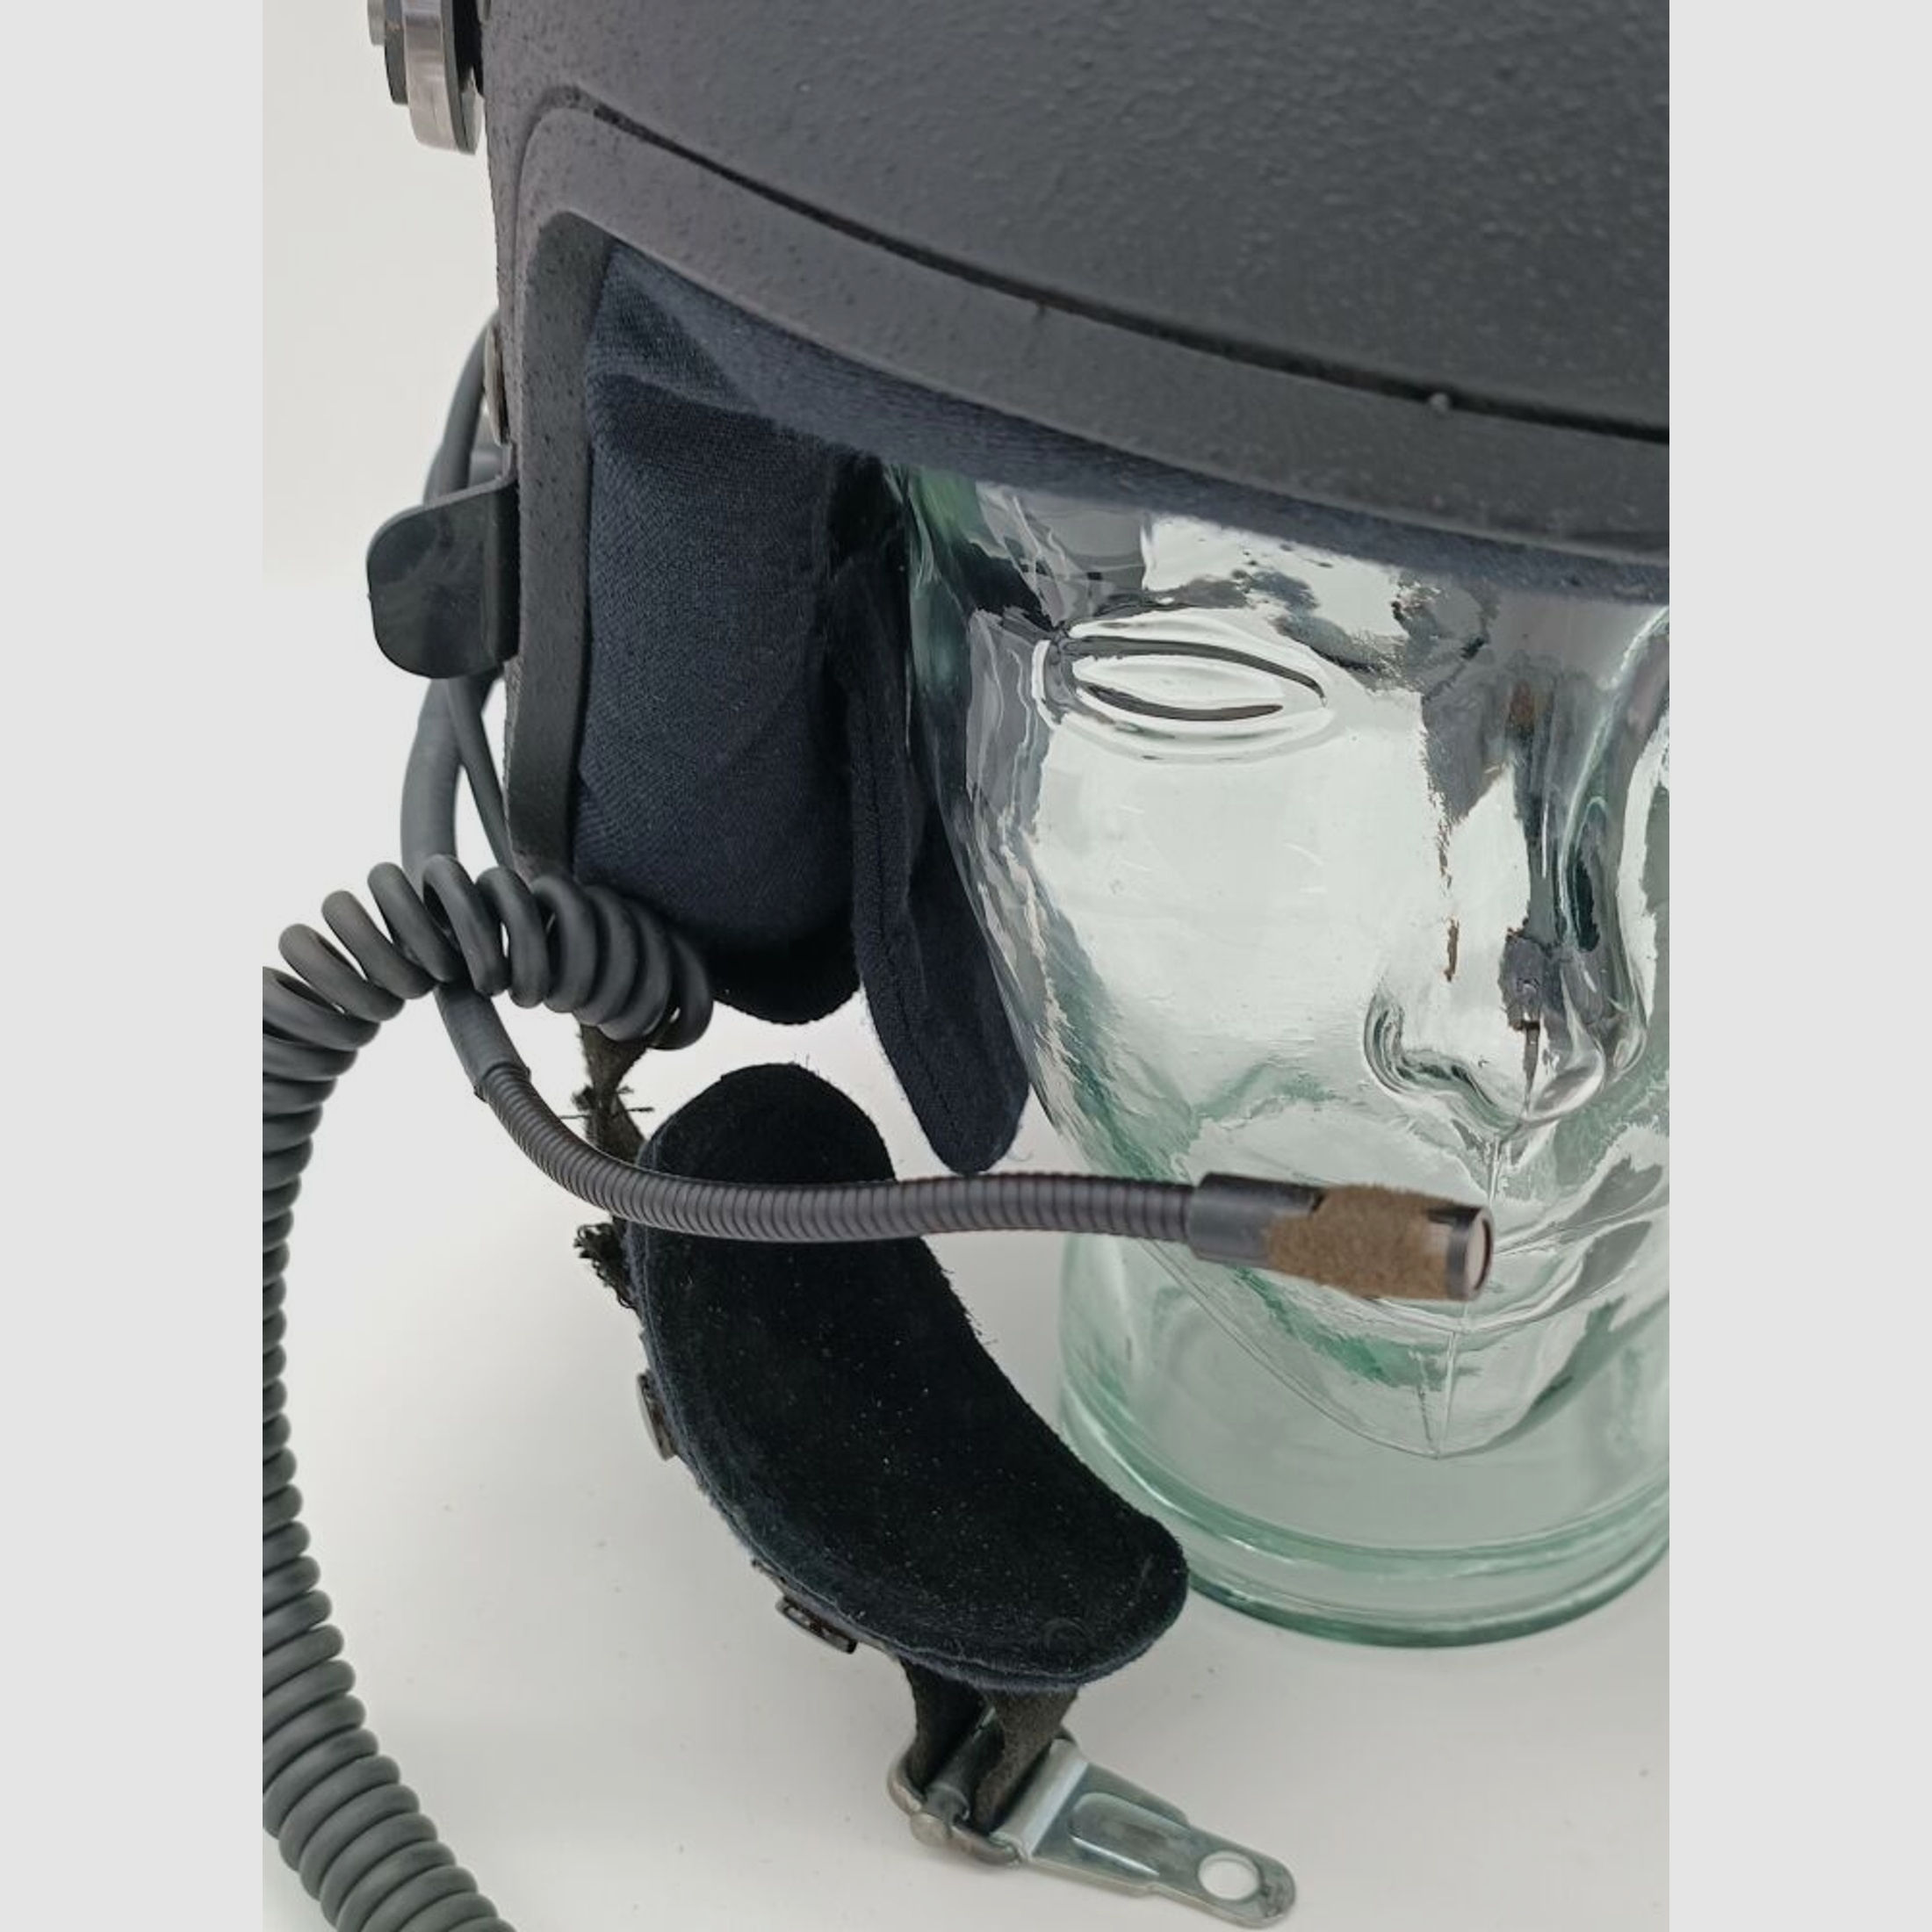 Schuberth	 P100 Polizeihelm aus Kevlar mit ballistischem Visier